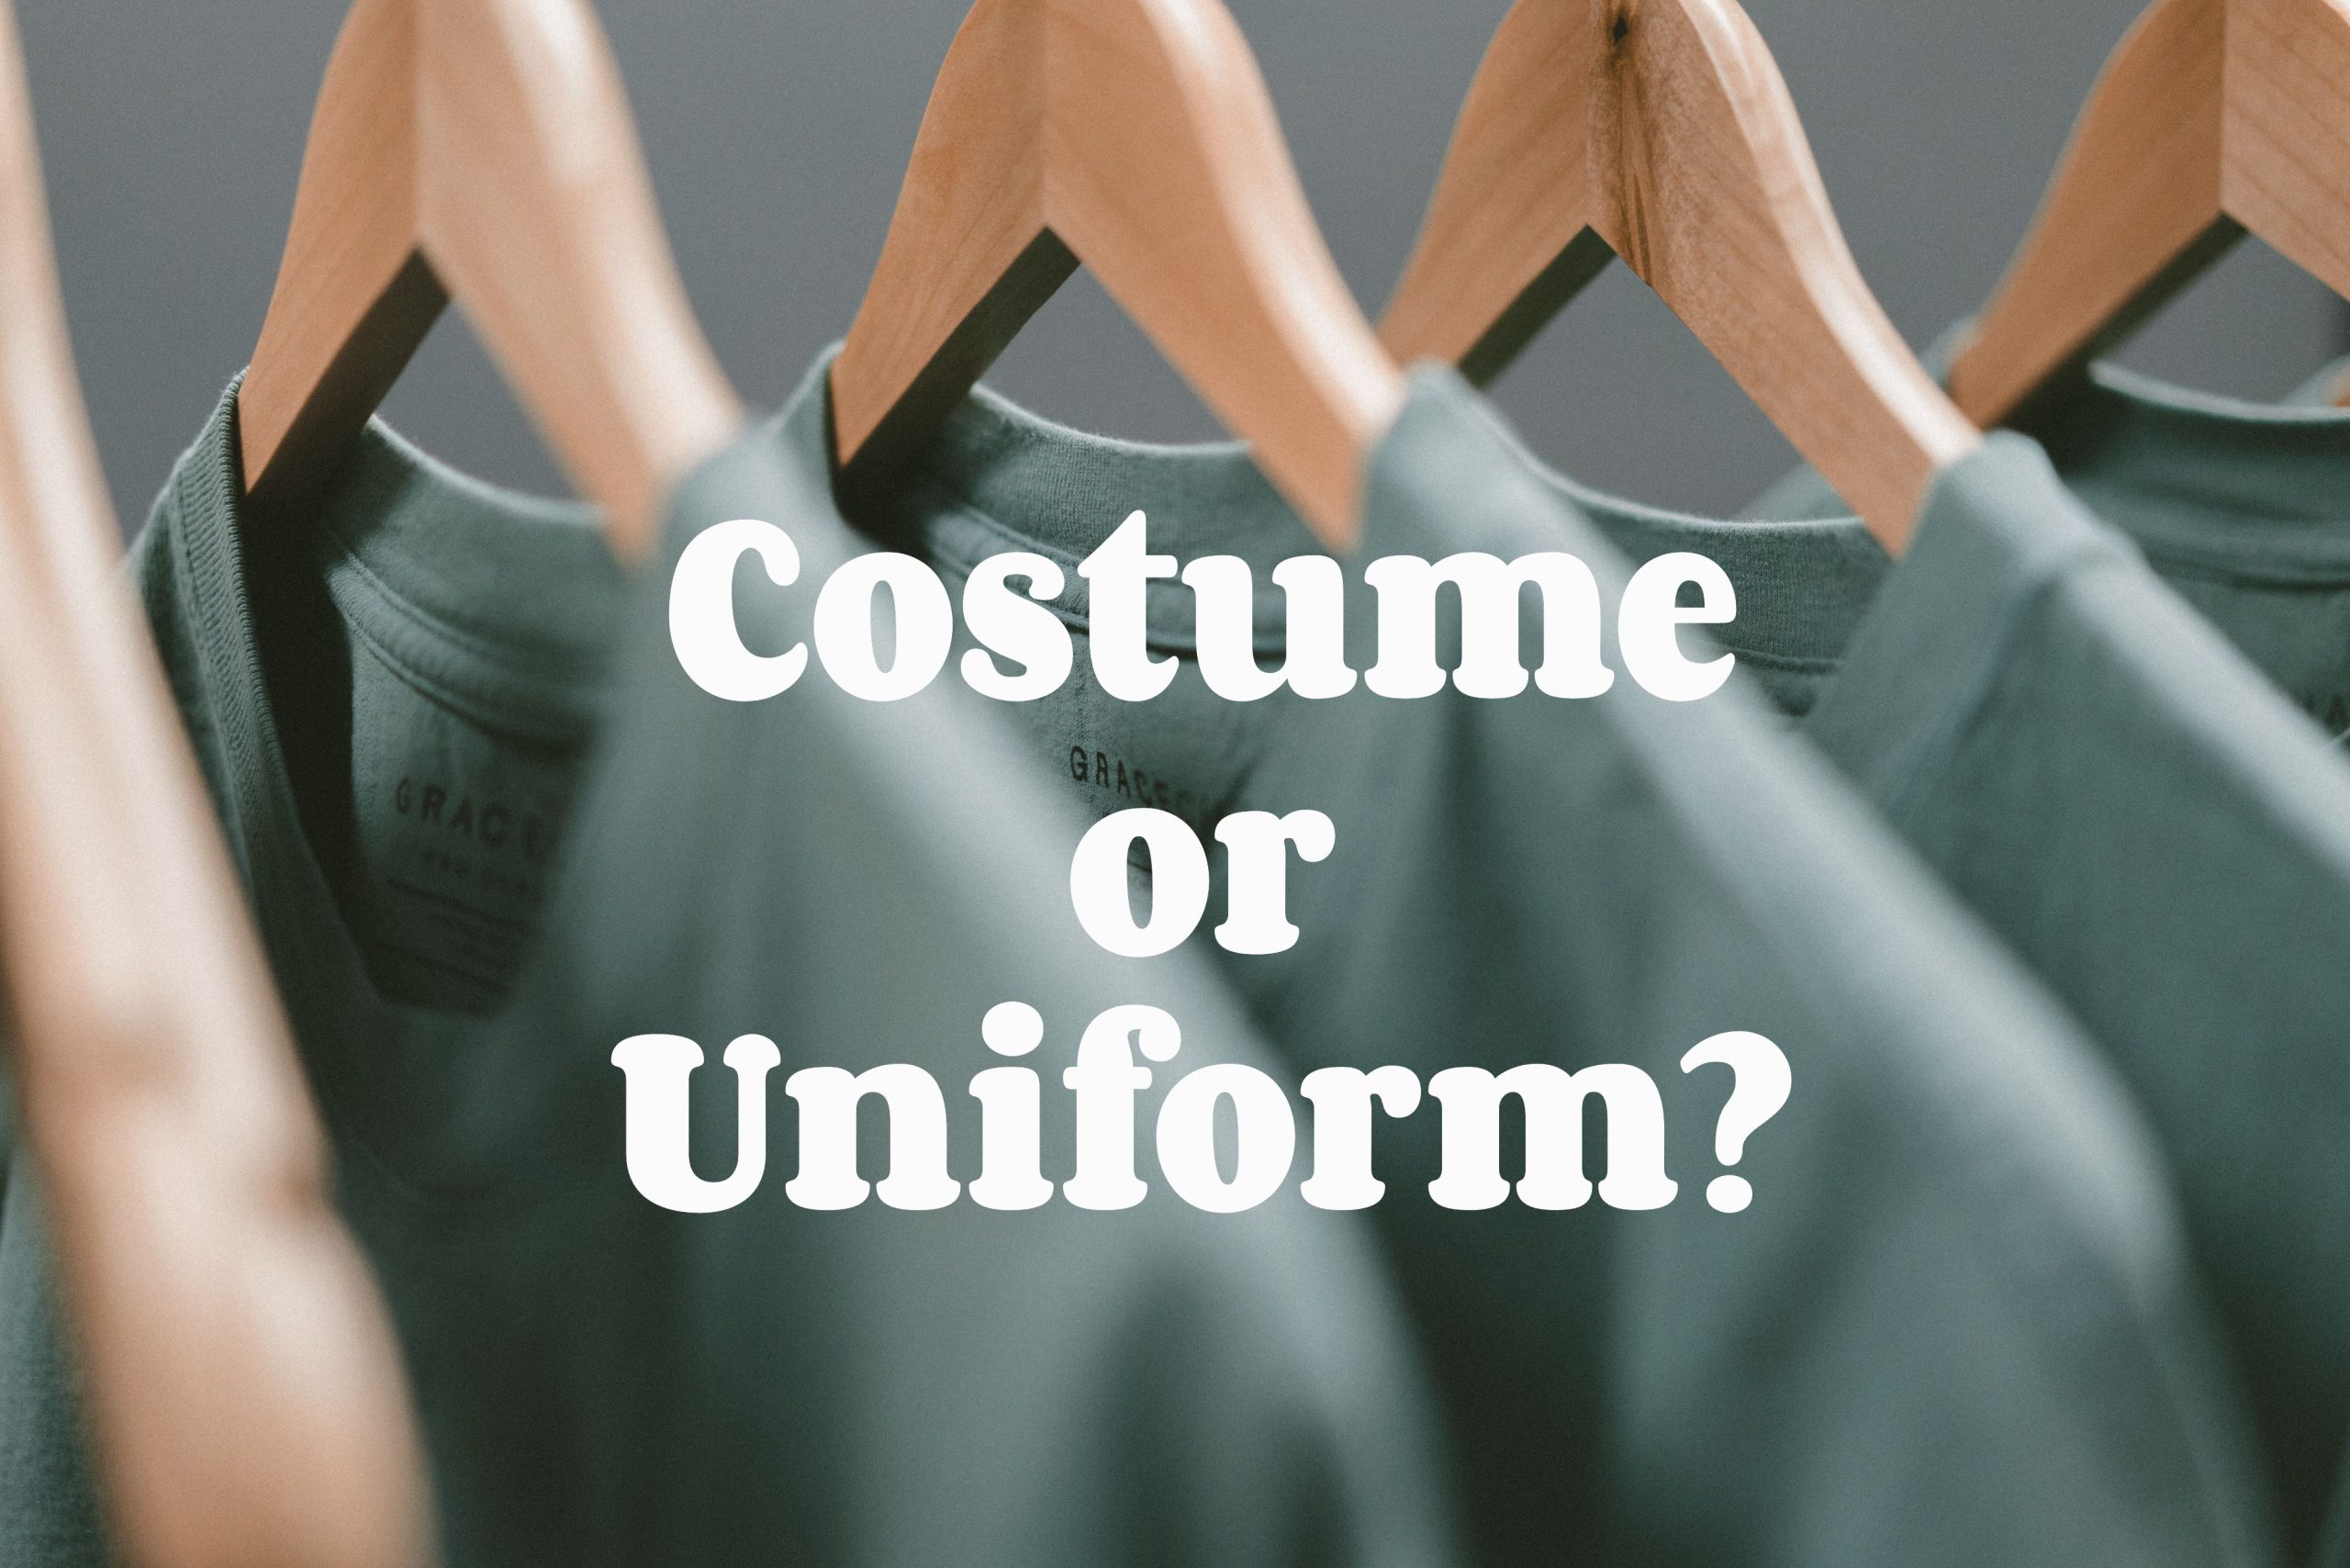 Costume or Uniform?